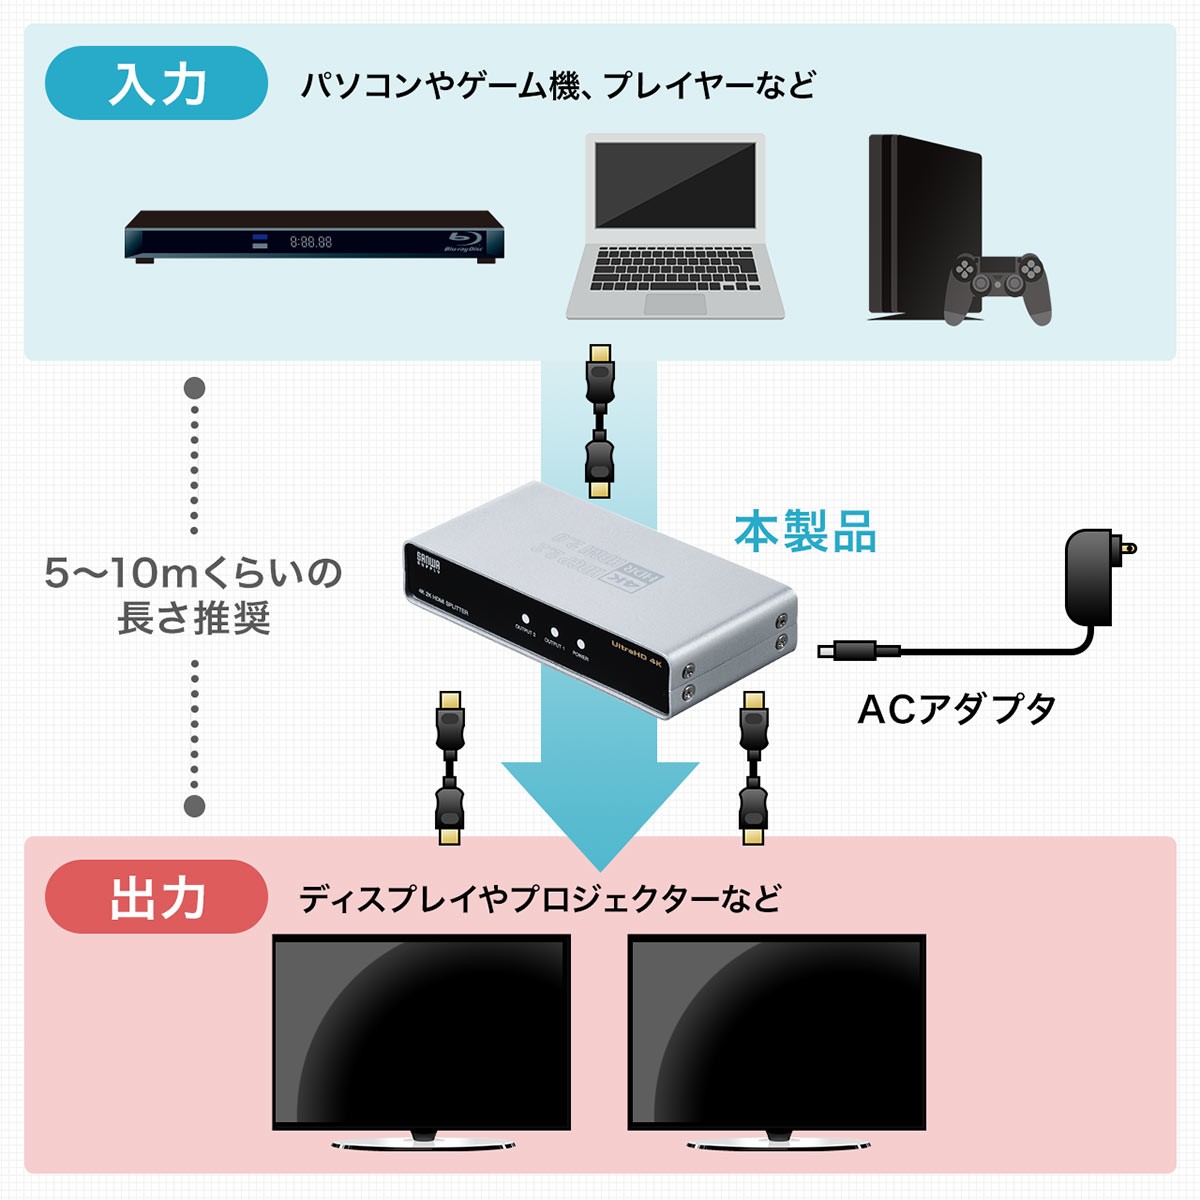 HDMI 分配器 スプリッター 1入力 2出力 2画面 高画質 4K 60Hz HDR HDCP2.2 Dolby 対応 モニター ディスプレイ 複製 テレビ パソコン コンパクト 小型 400-VGA016